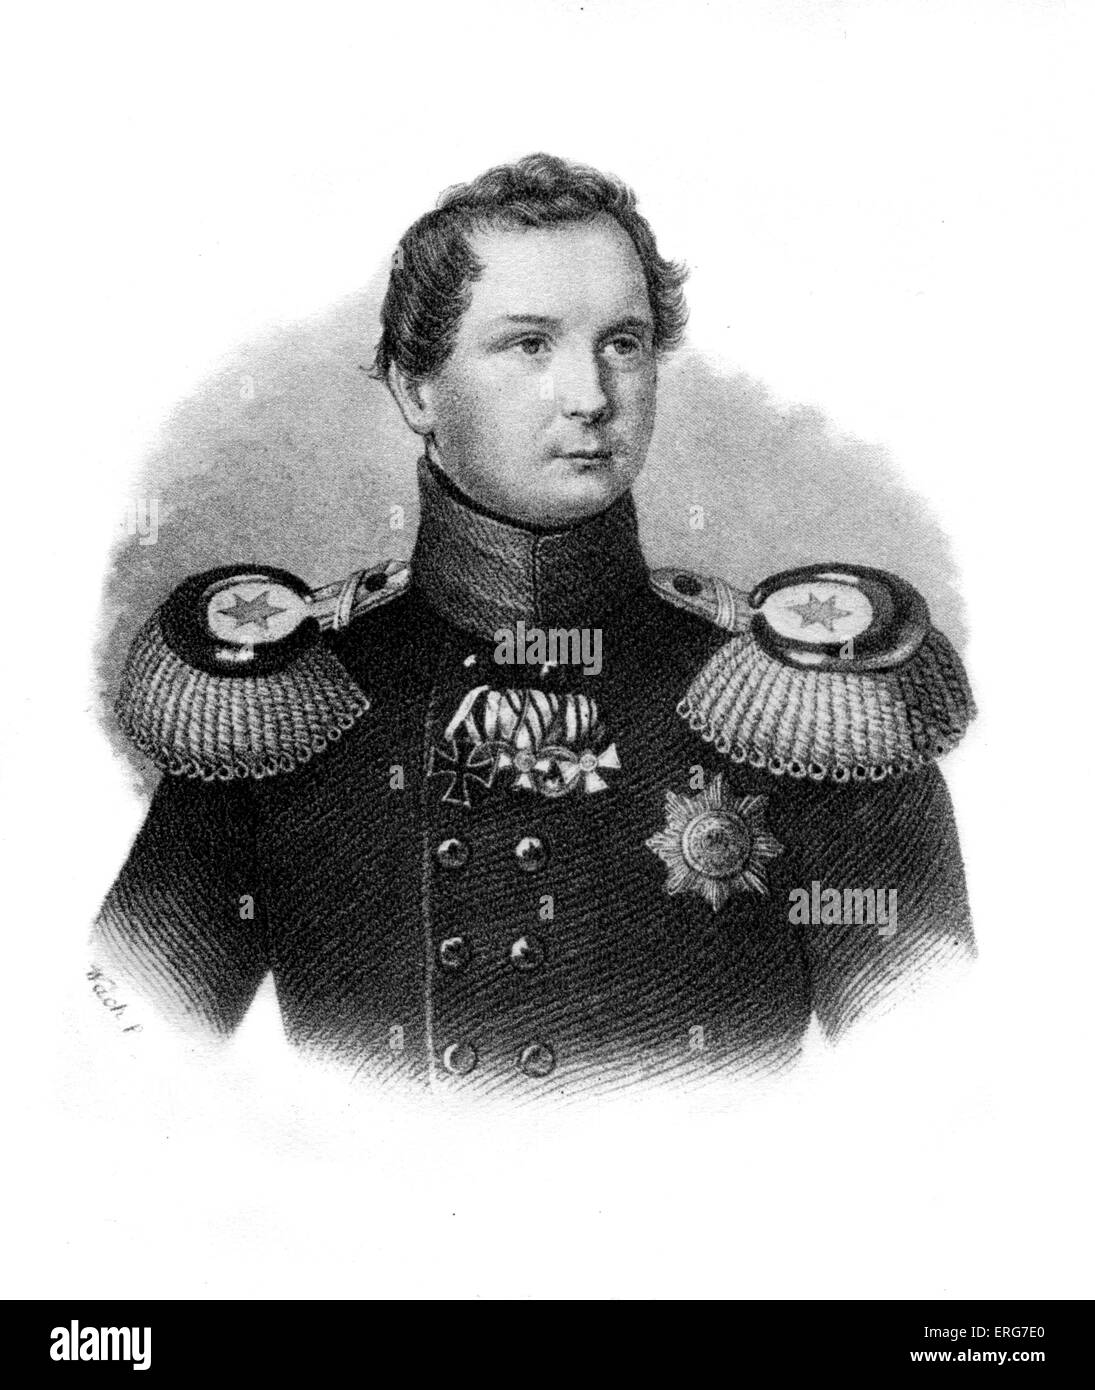 Friedrich Wilhelm IV. von Preußen - Porträt. König von Preußen von 1840-1861, 1795-1861. Liszt-Verbindung. Stockfoto